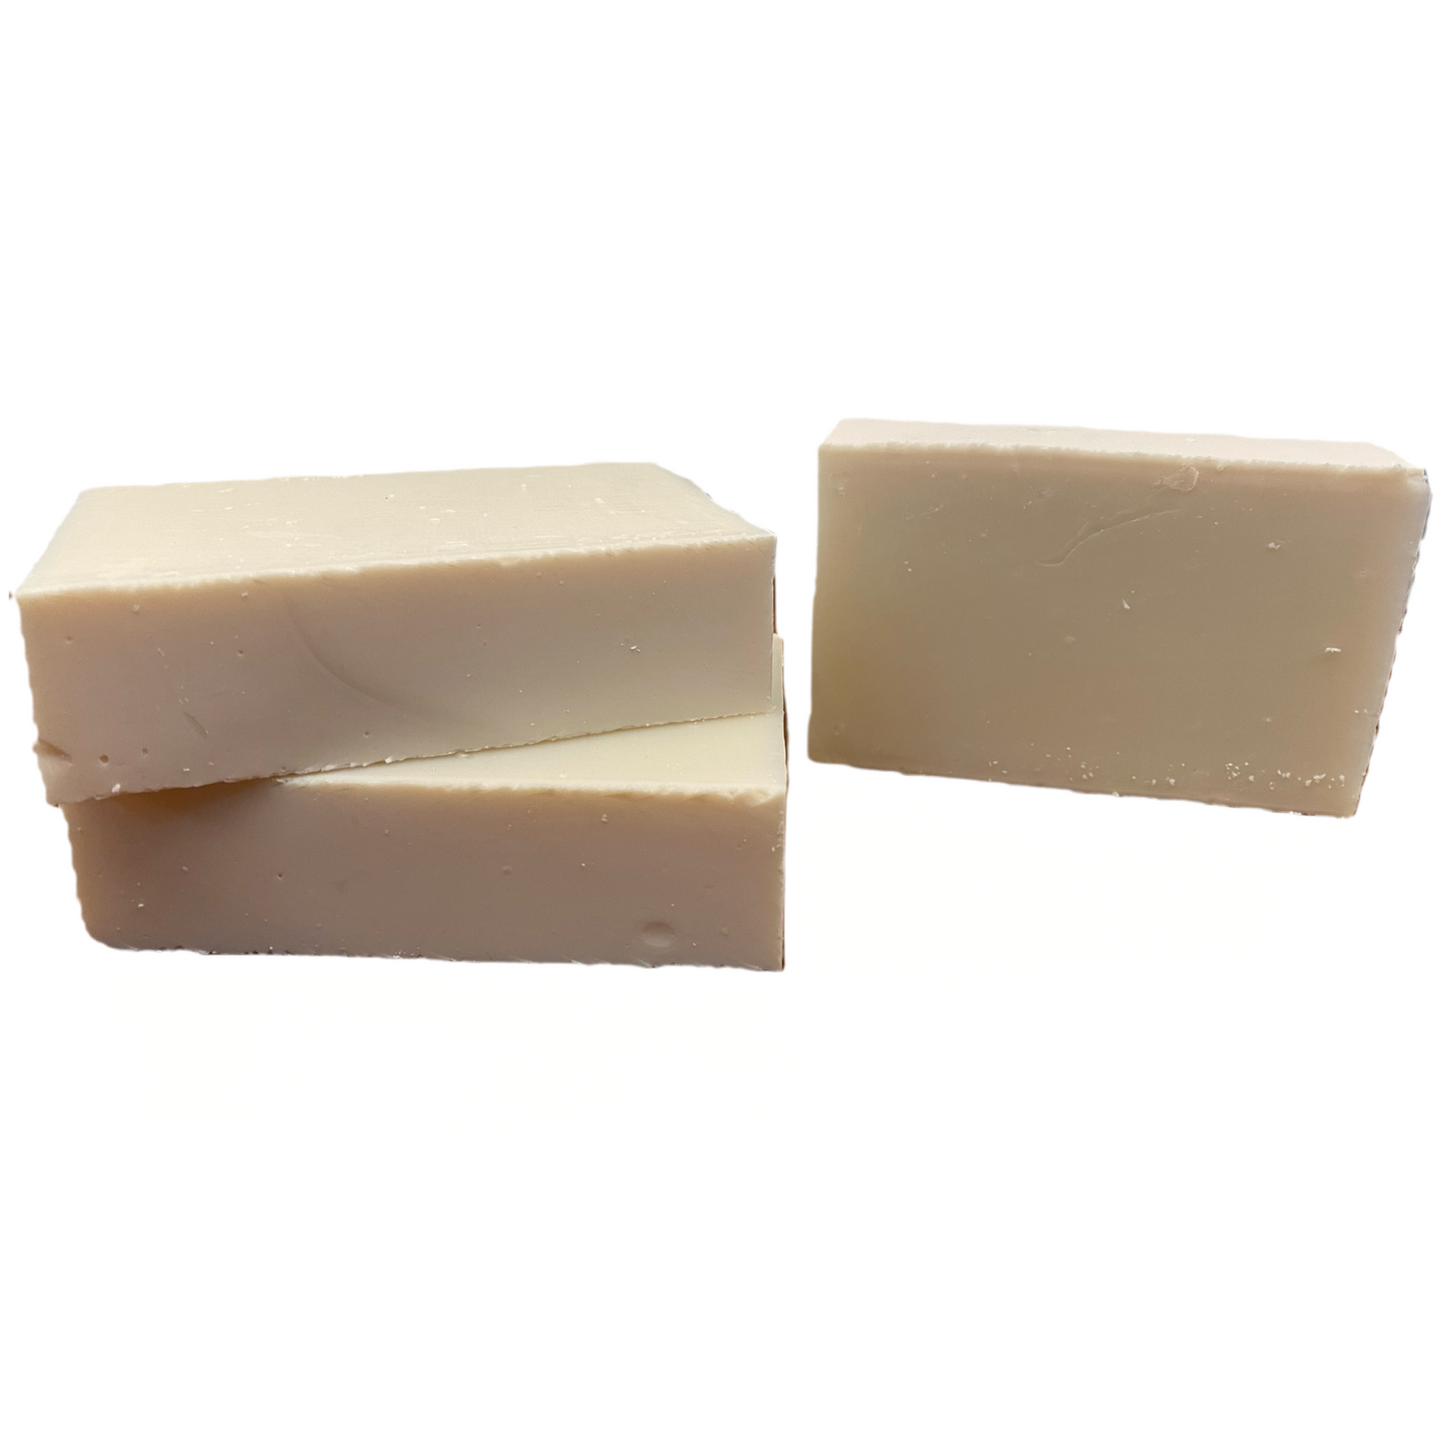 Unscented Soap for Sensitive Skin